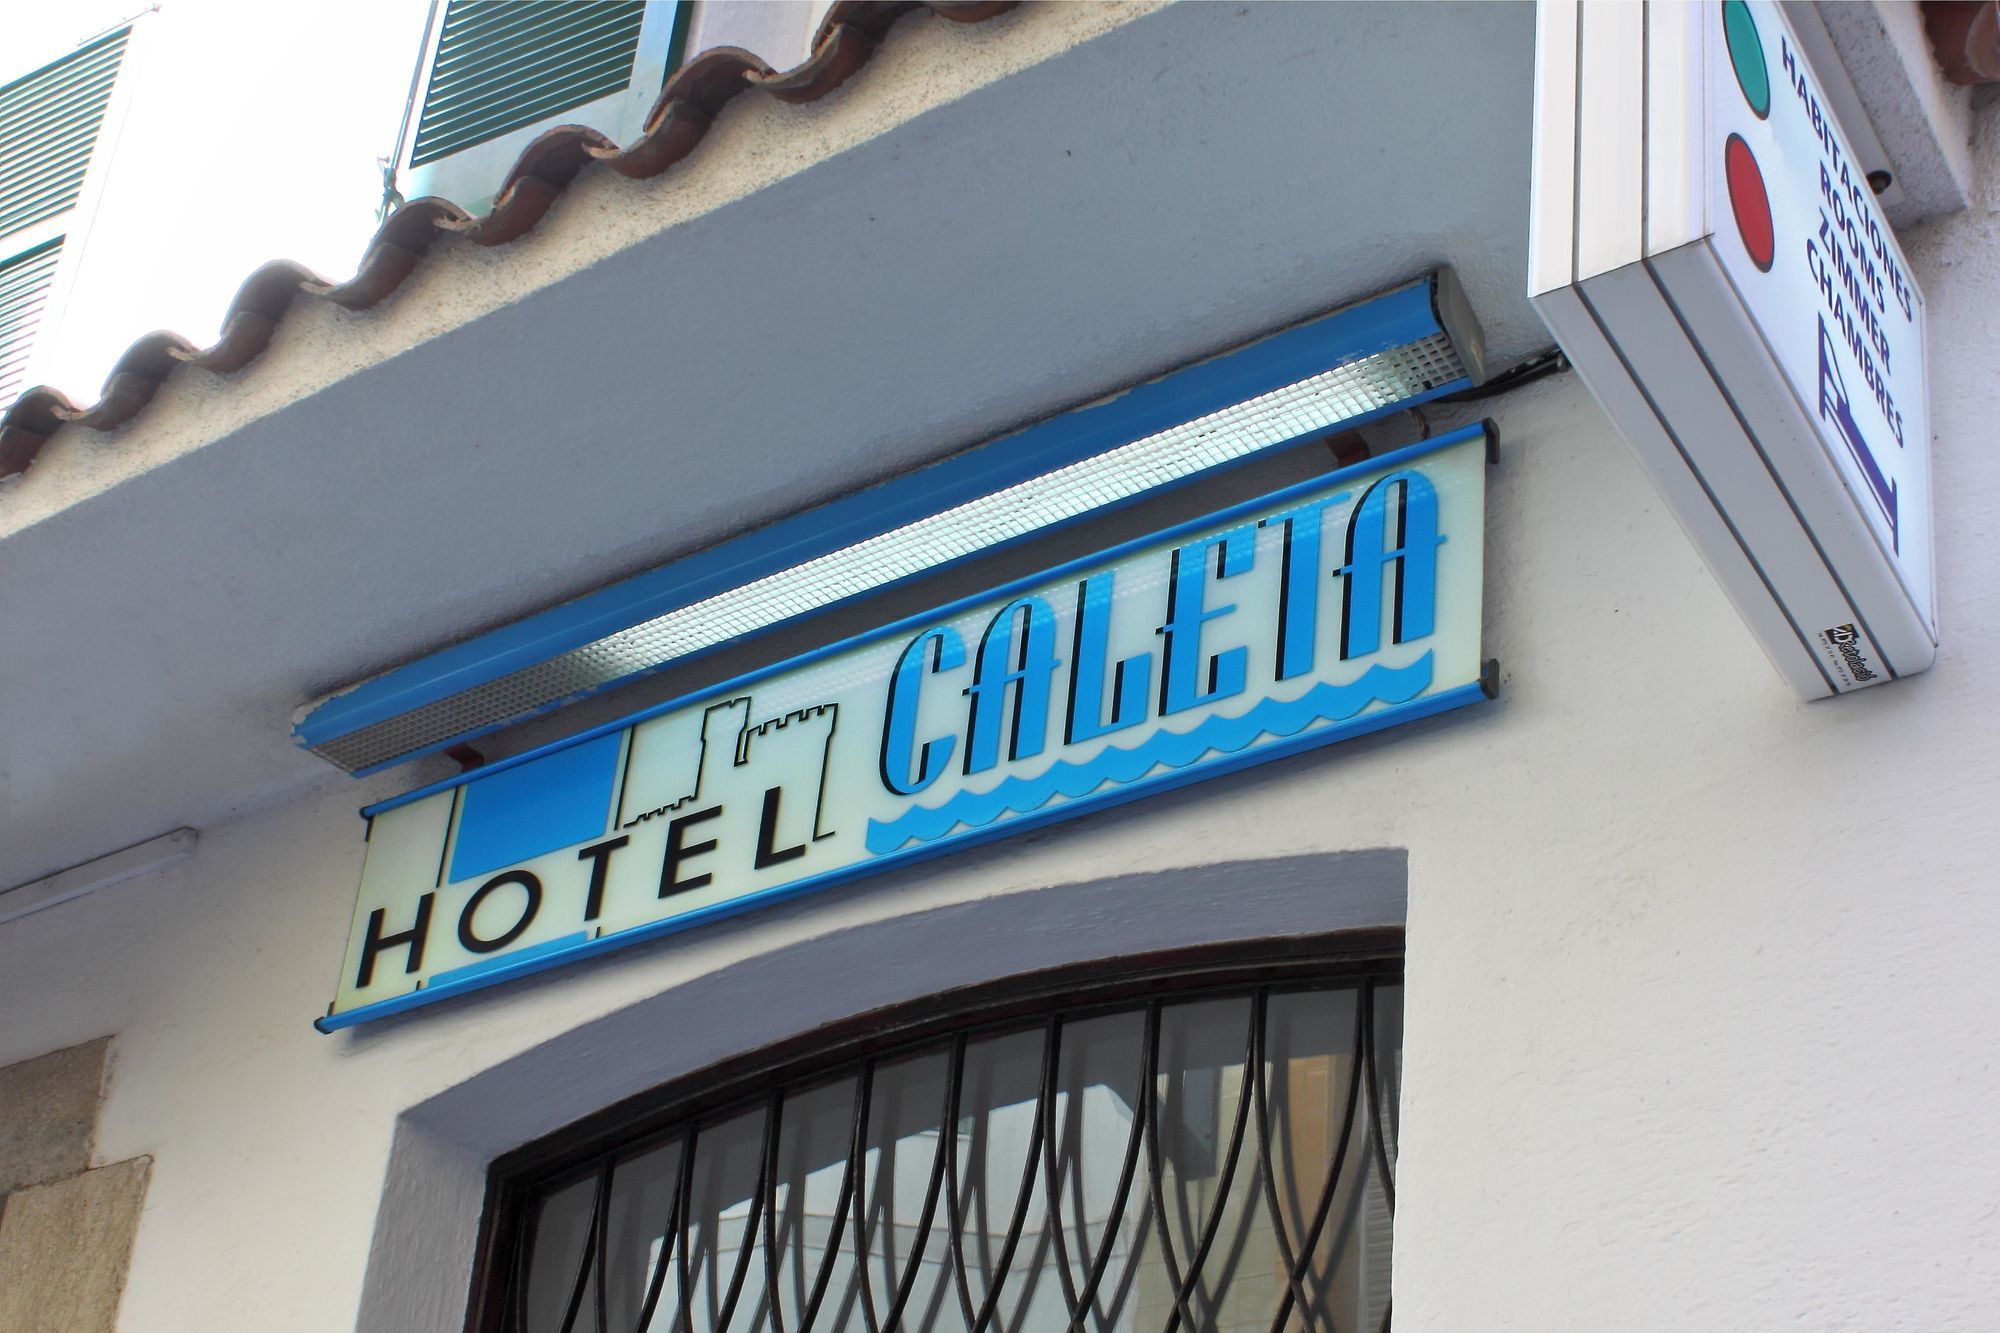 Hotel Caleta Lloret de Mar Extérieur photo